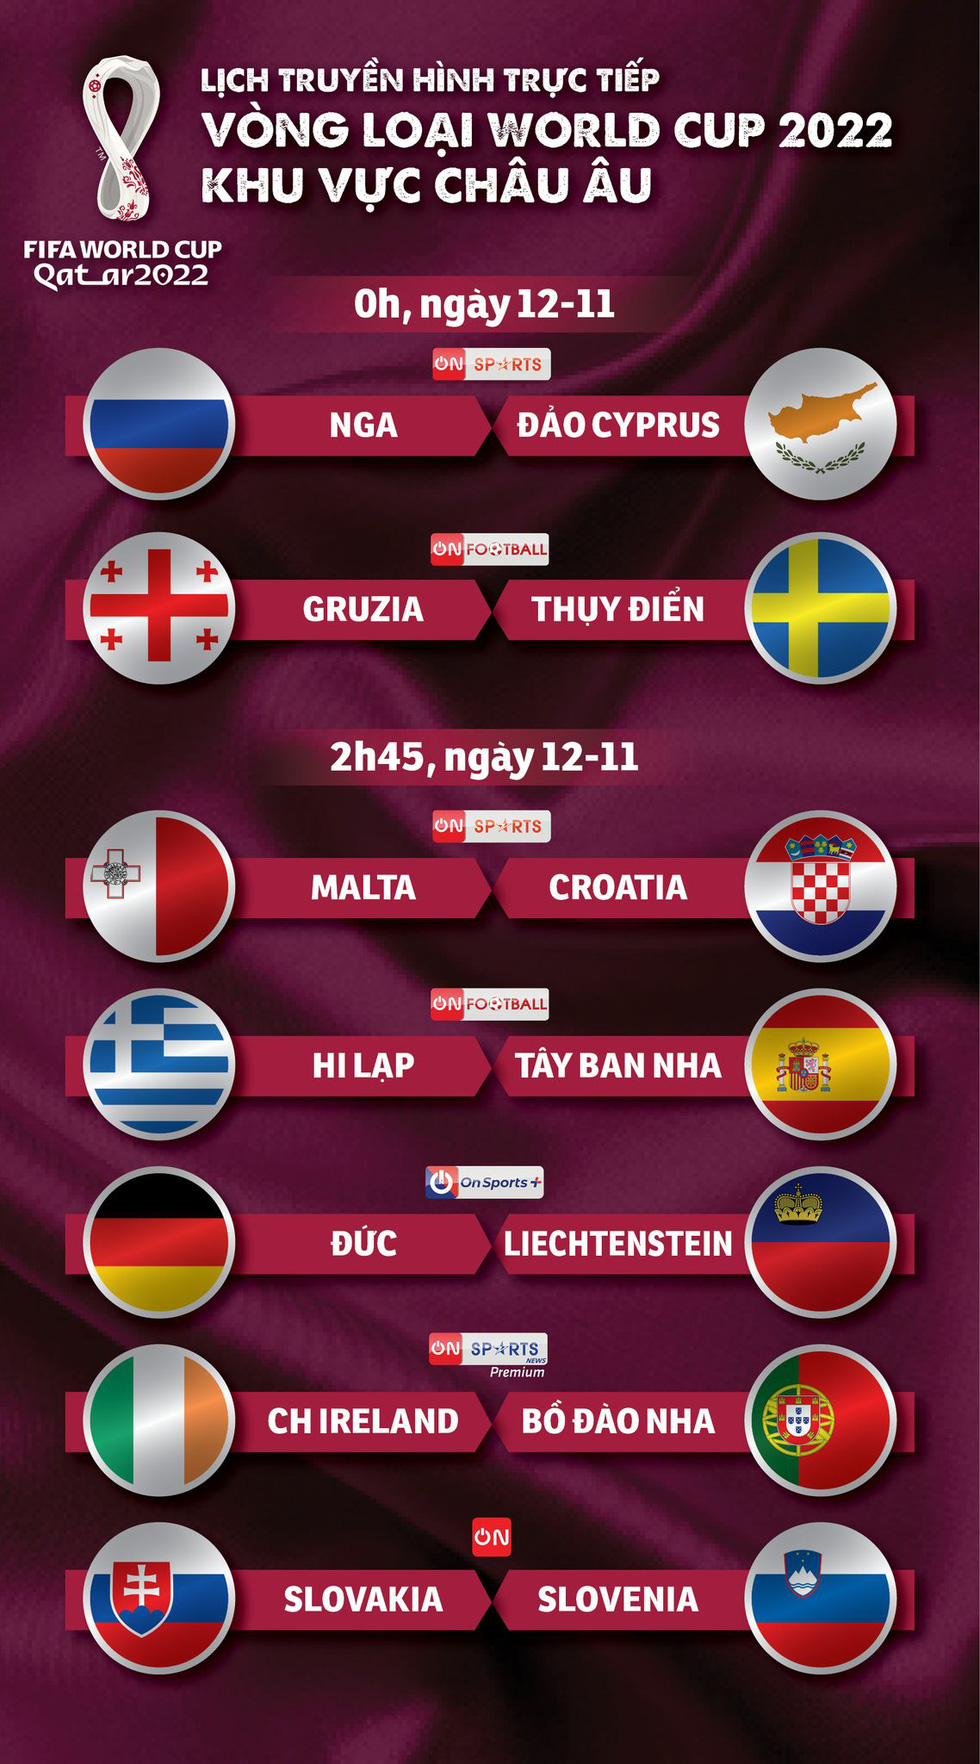 Lịch trực tiếp vòng loại World Cup 2022 khu vực châu Âu: Đức, Tây Ban Nha, Bồ Đào Nha thi đấu - Ảnh 1.